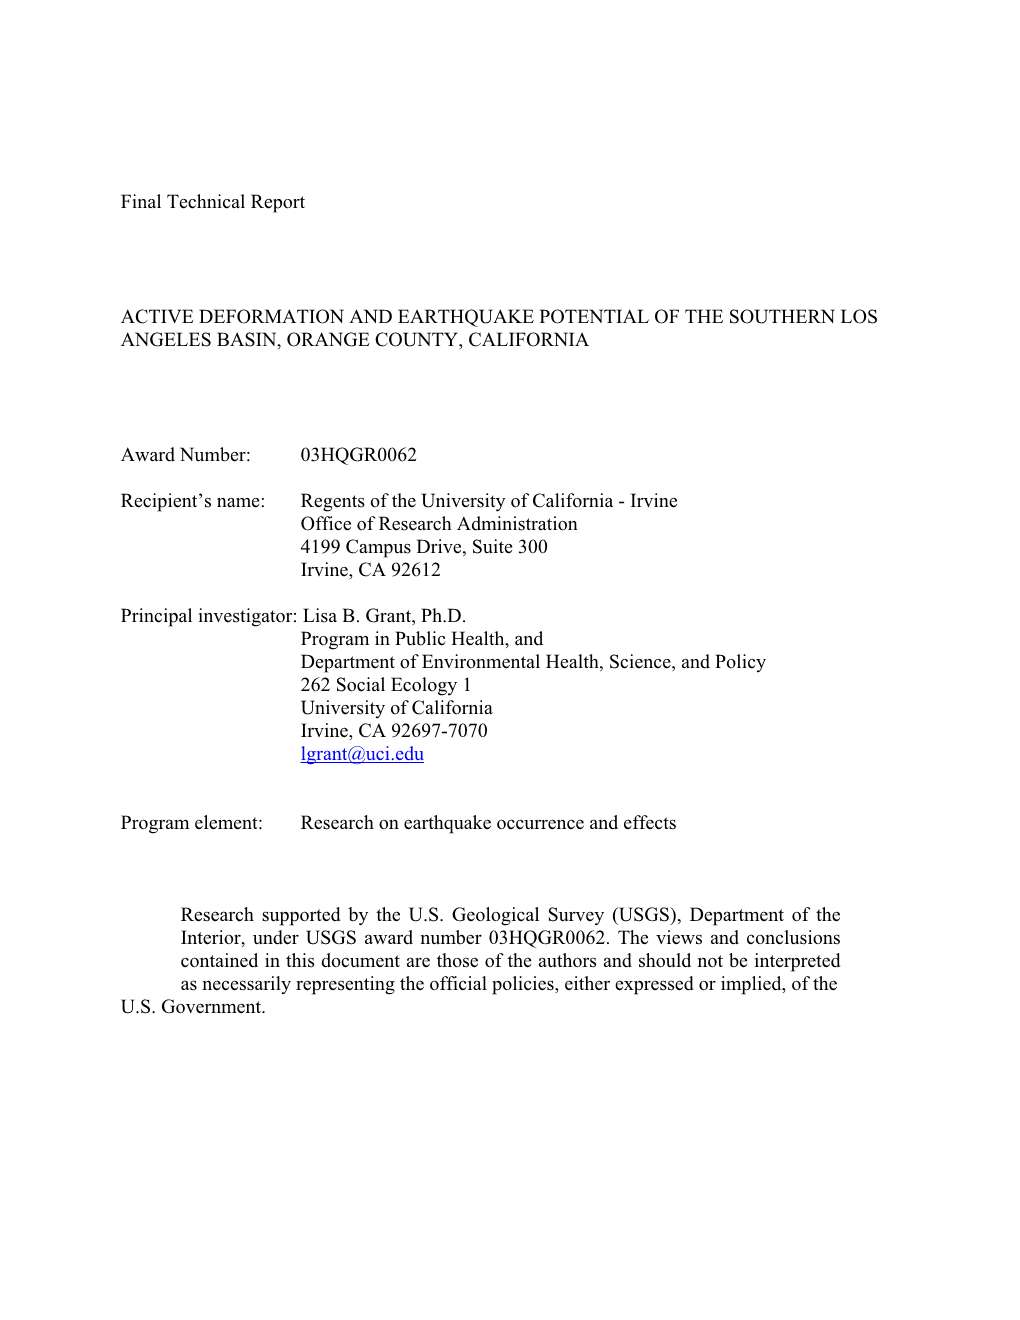 USGS Final Technical Report 03HQGR0062